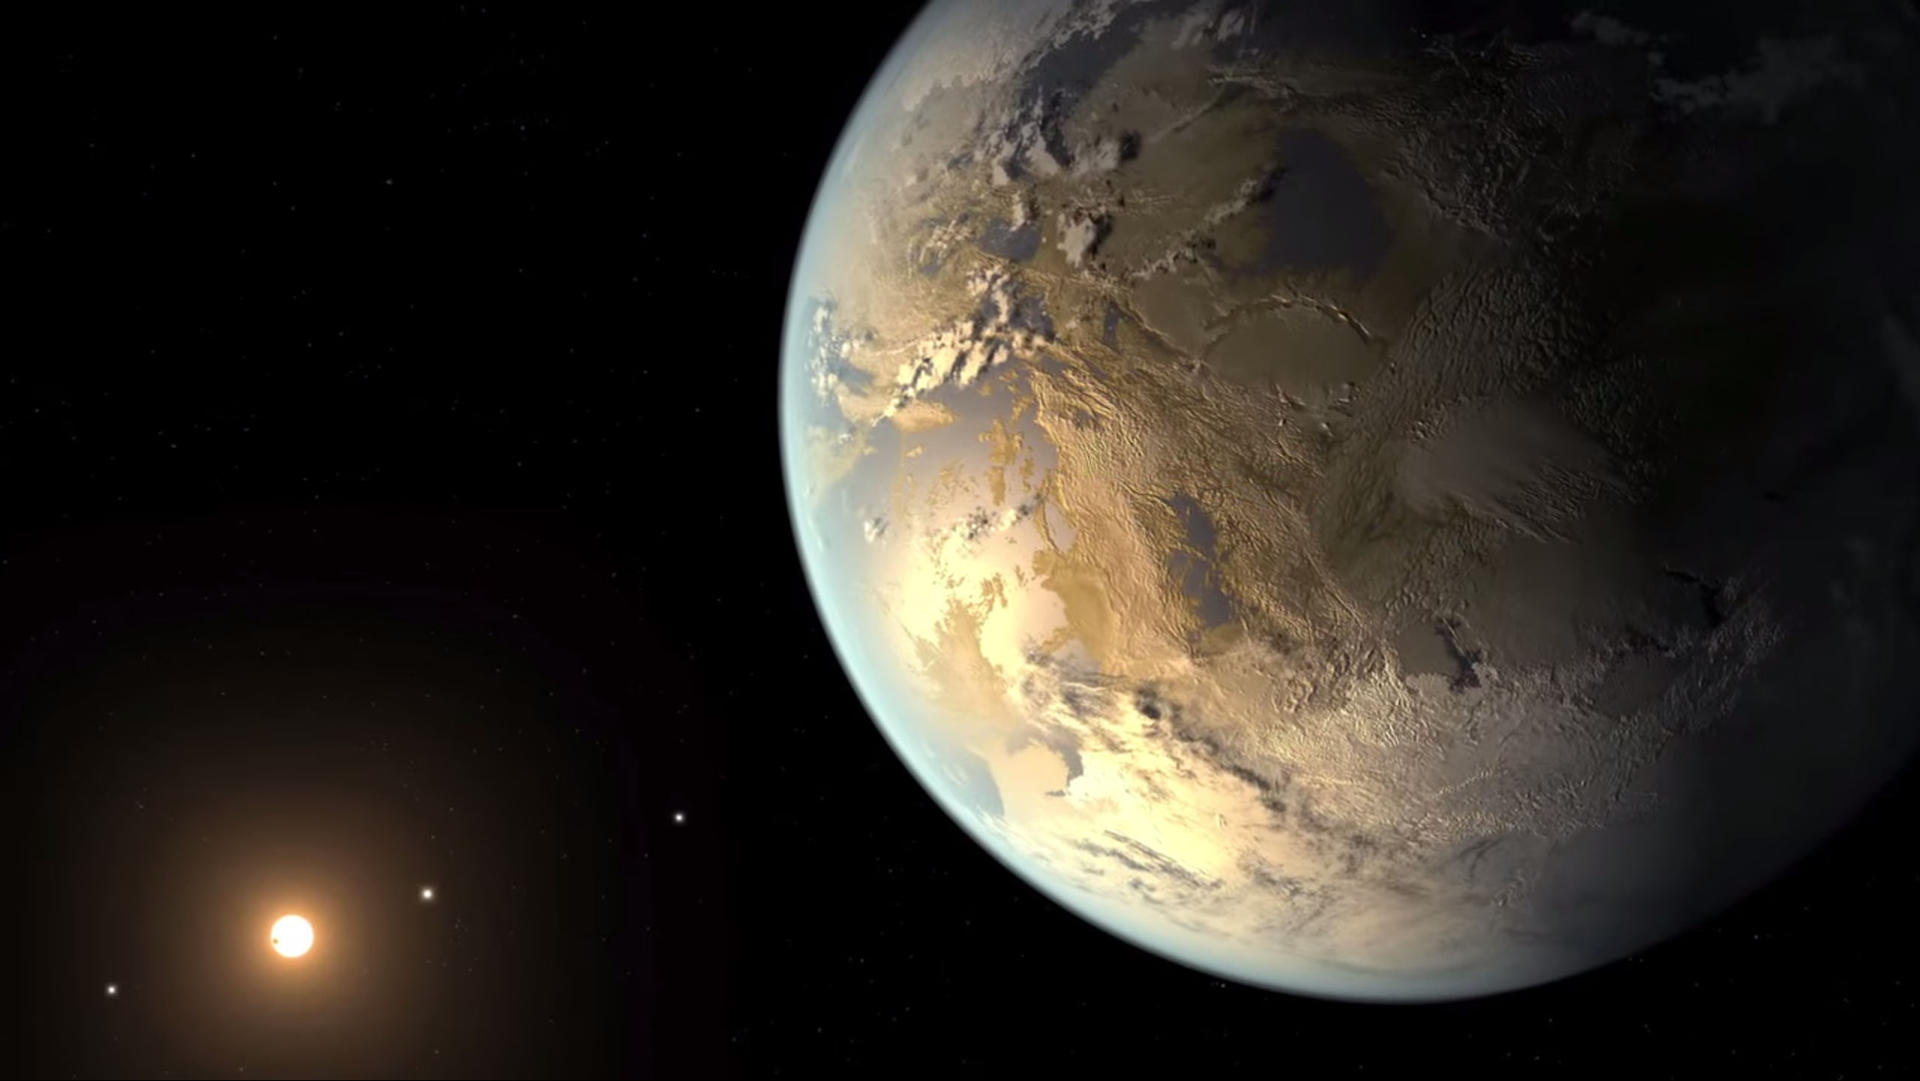 Fotografía cedida por la NASA donde se aprecia una representación artística de Kepler-186f, el primer planeta validado del tamaño de la tierra en orbitar una estrella distante en la zona habitable. EFE/NASA Ames/JPL-Caltech/T. Pyle